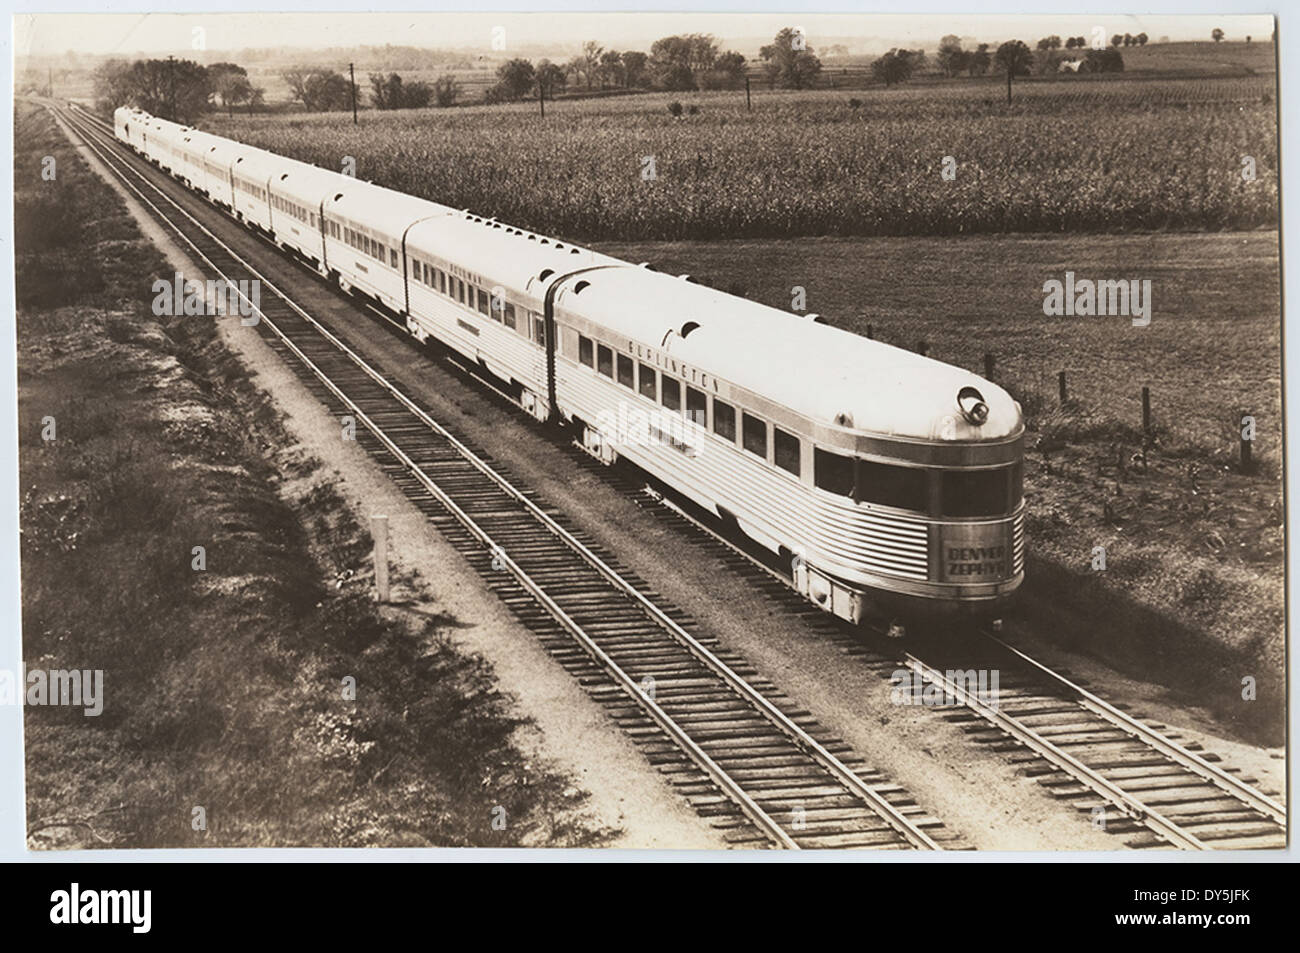 Chicago, Burlington & Quincy R.R., Original 'Denver Zephyr' Train Stock Photo